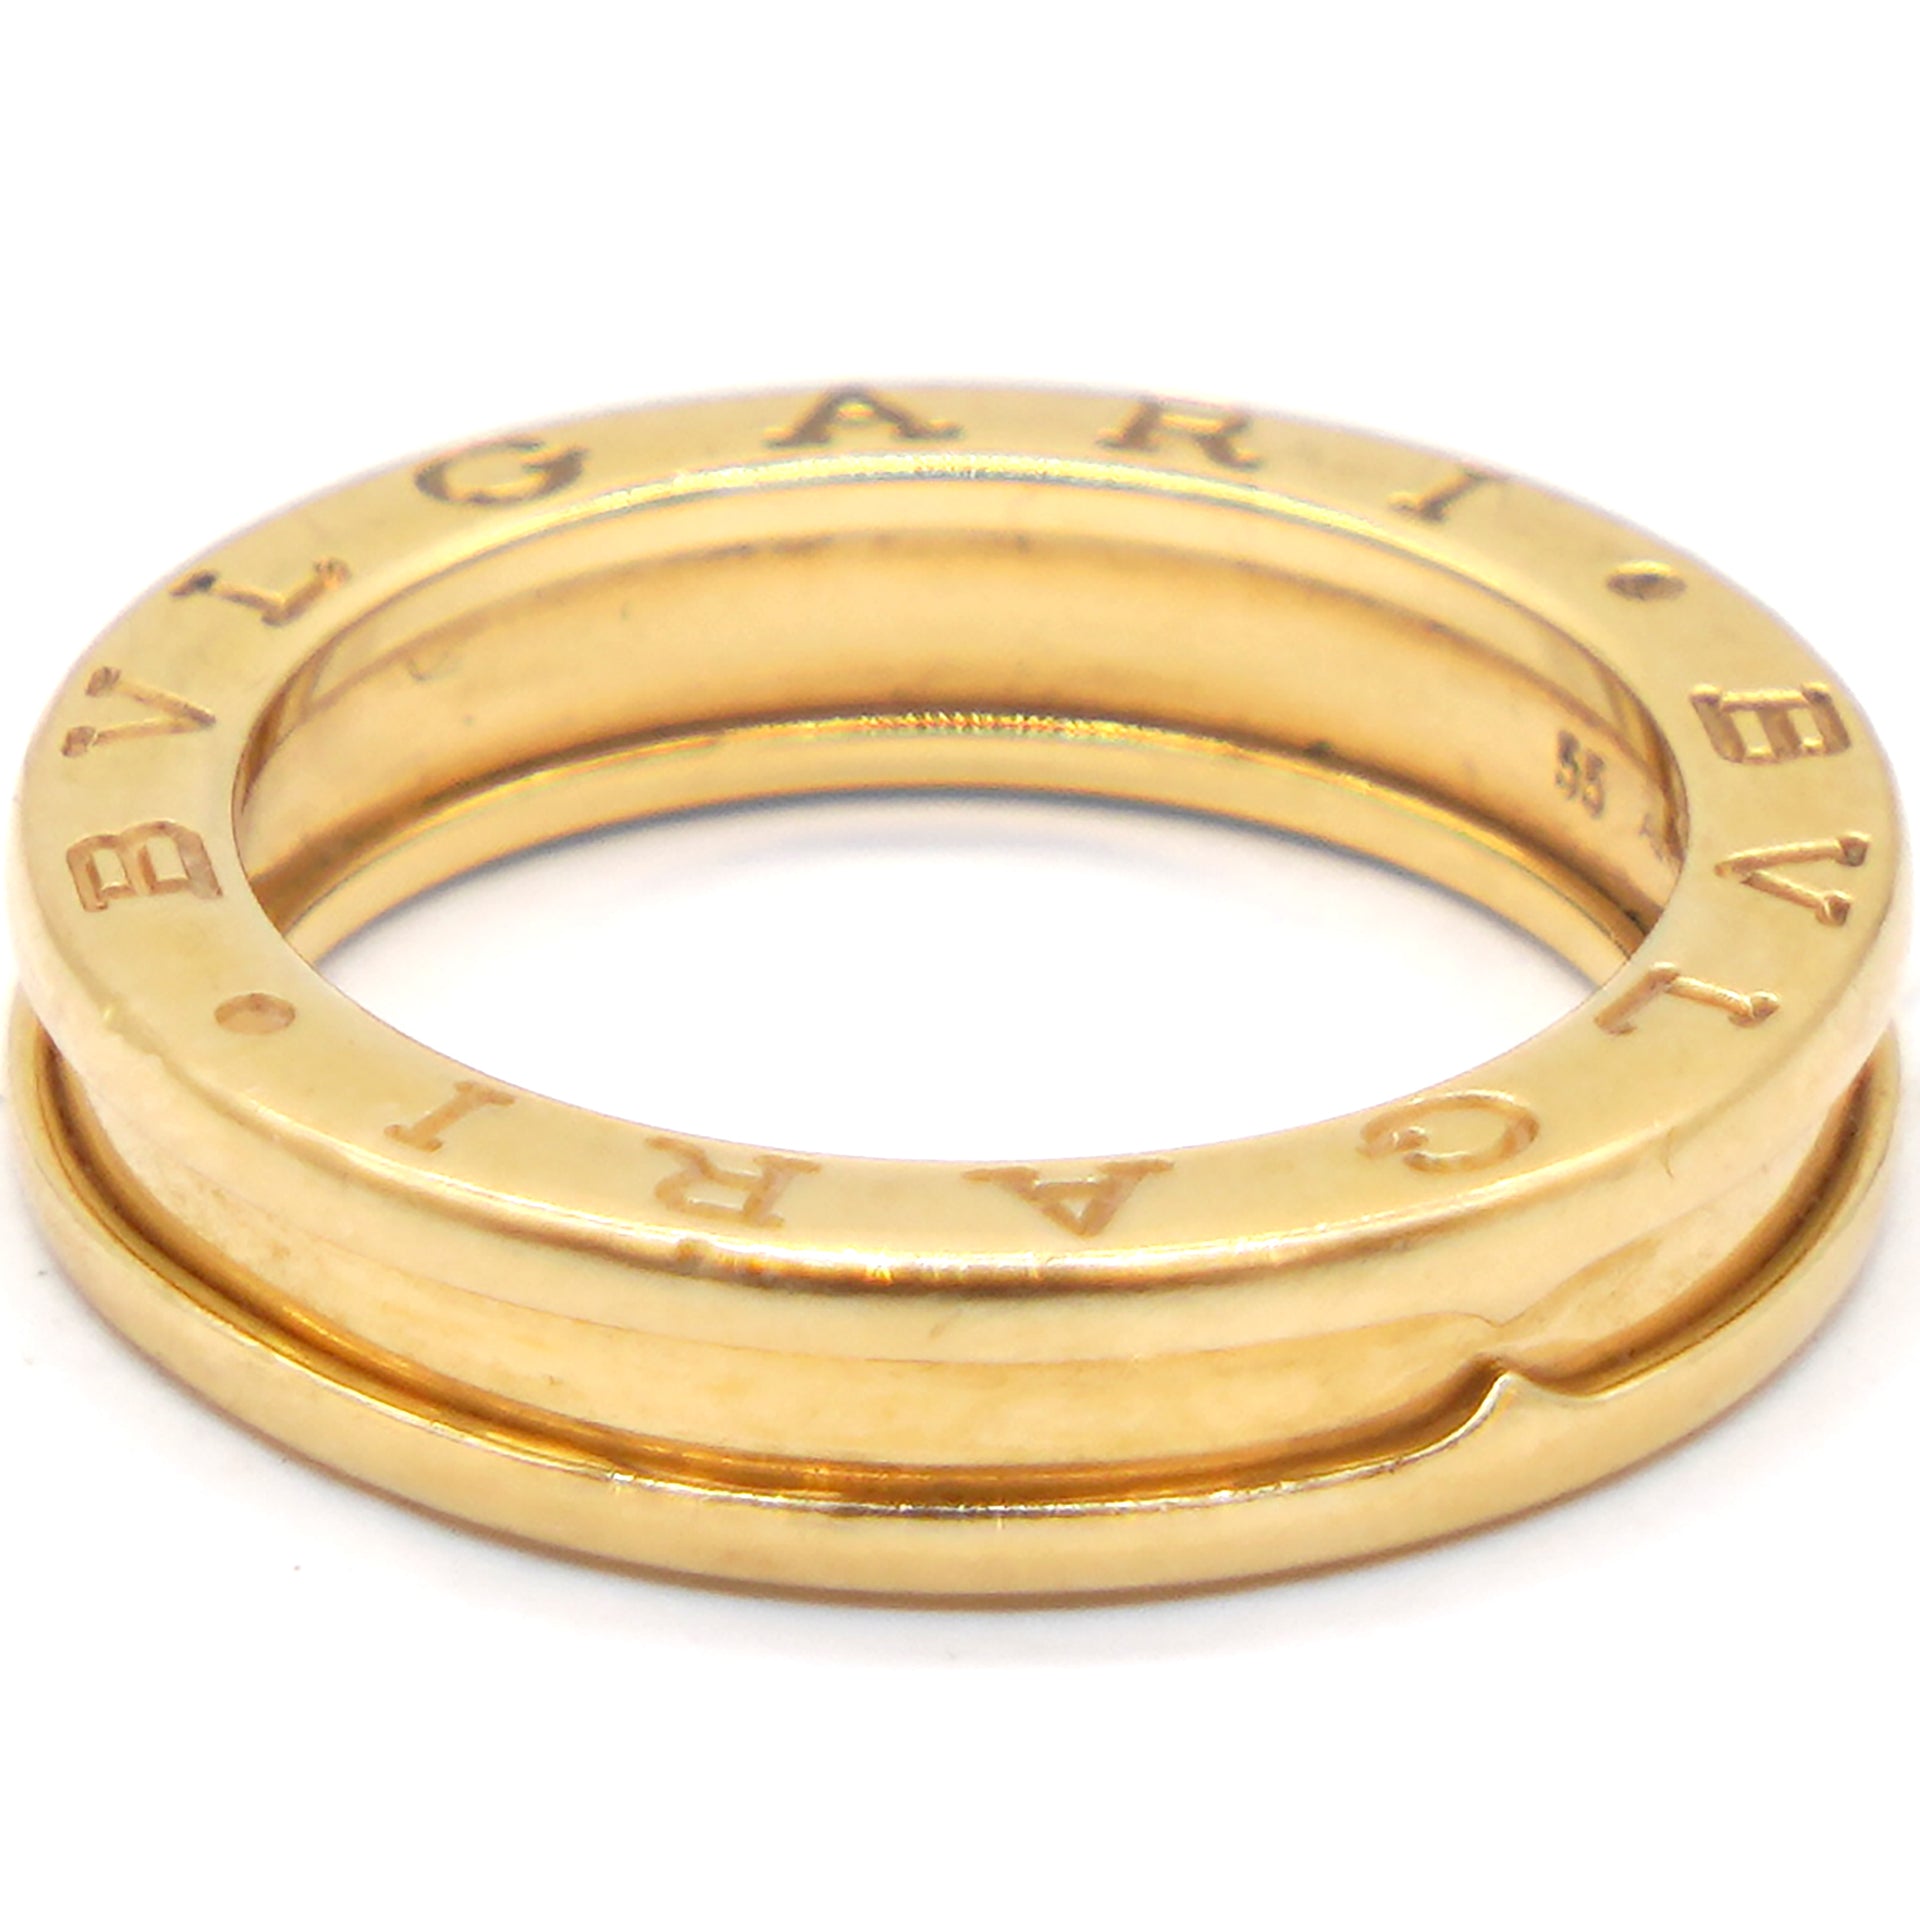 18K Yellow Gold Ceramic B.Zero1 One-Band Ring 55